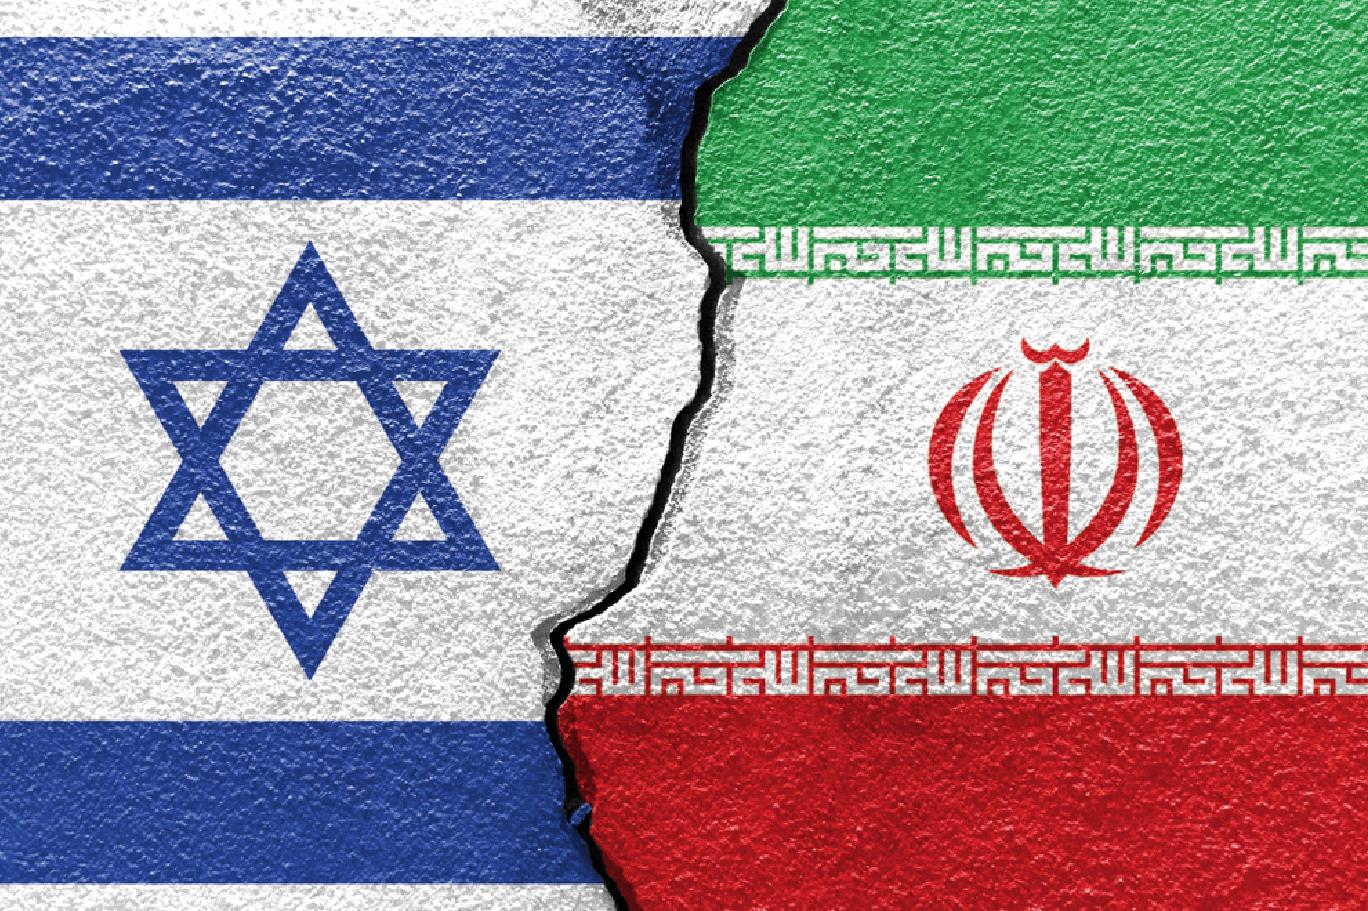 İran'dan İsrail'e tehdit! ''Karşılık verilecek''